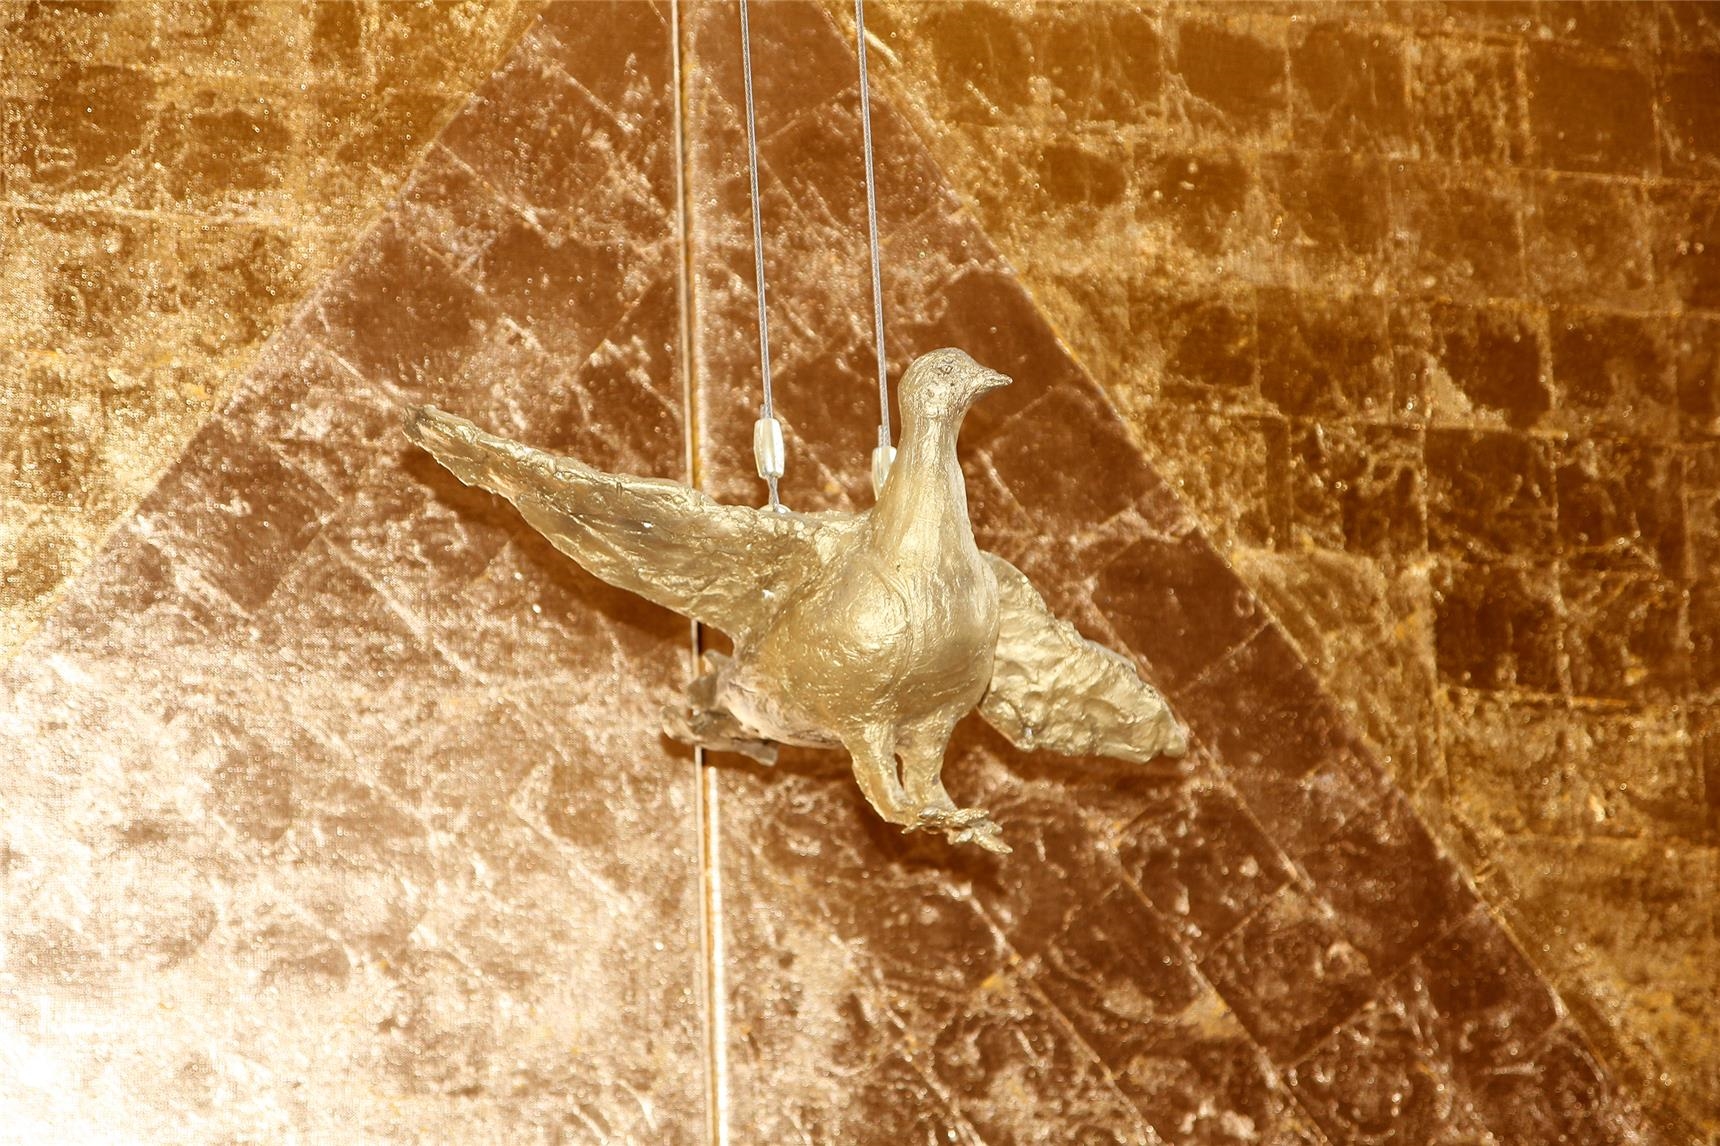 Die Taube als Zeichen des Heiligen Geistes hängt vor dem goldenen Altarbild mit dem Dreieck als Symbol der Dreifaltigkeit Gottes.  (Bernhard Gattner)